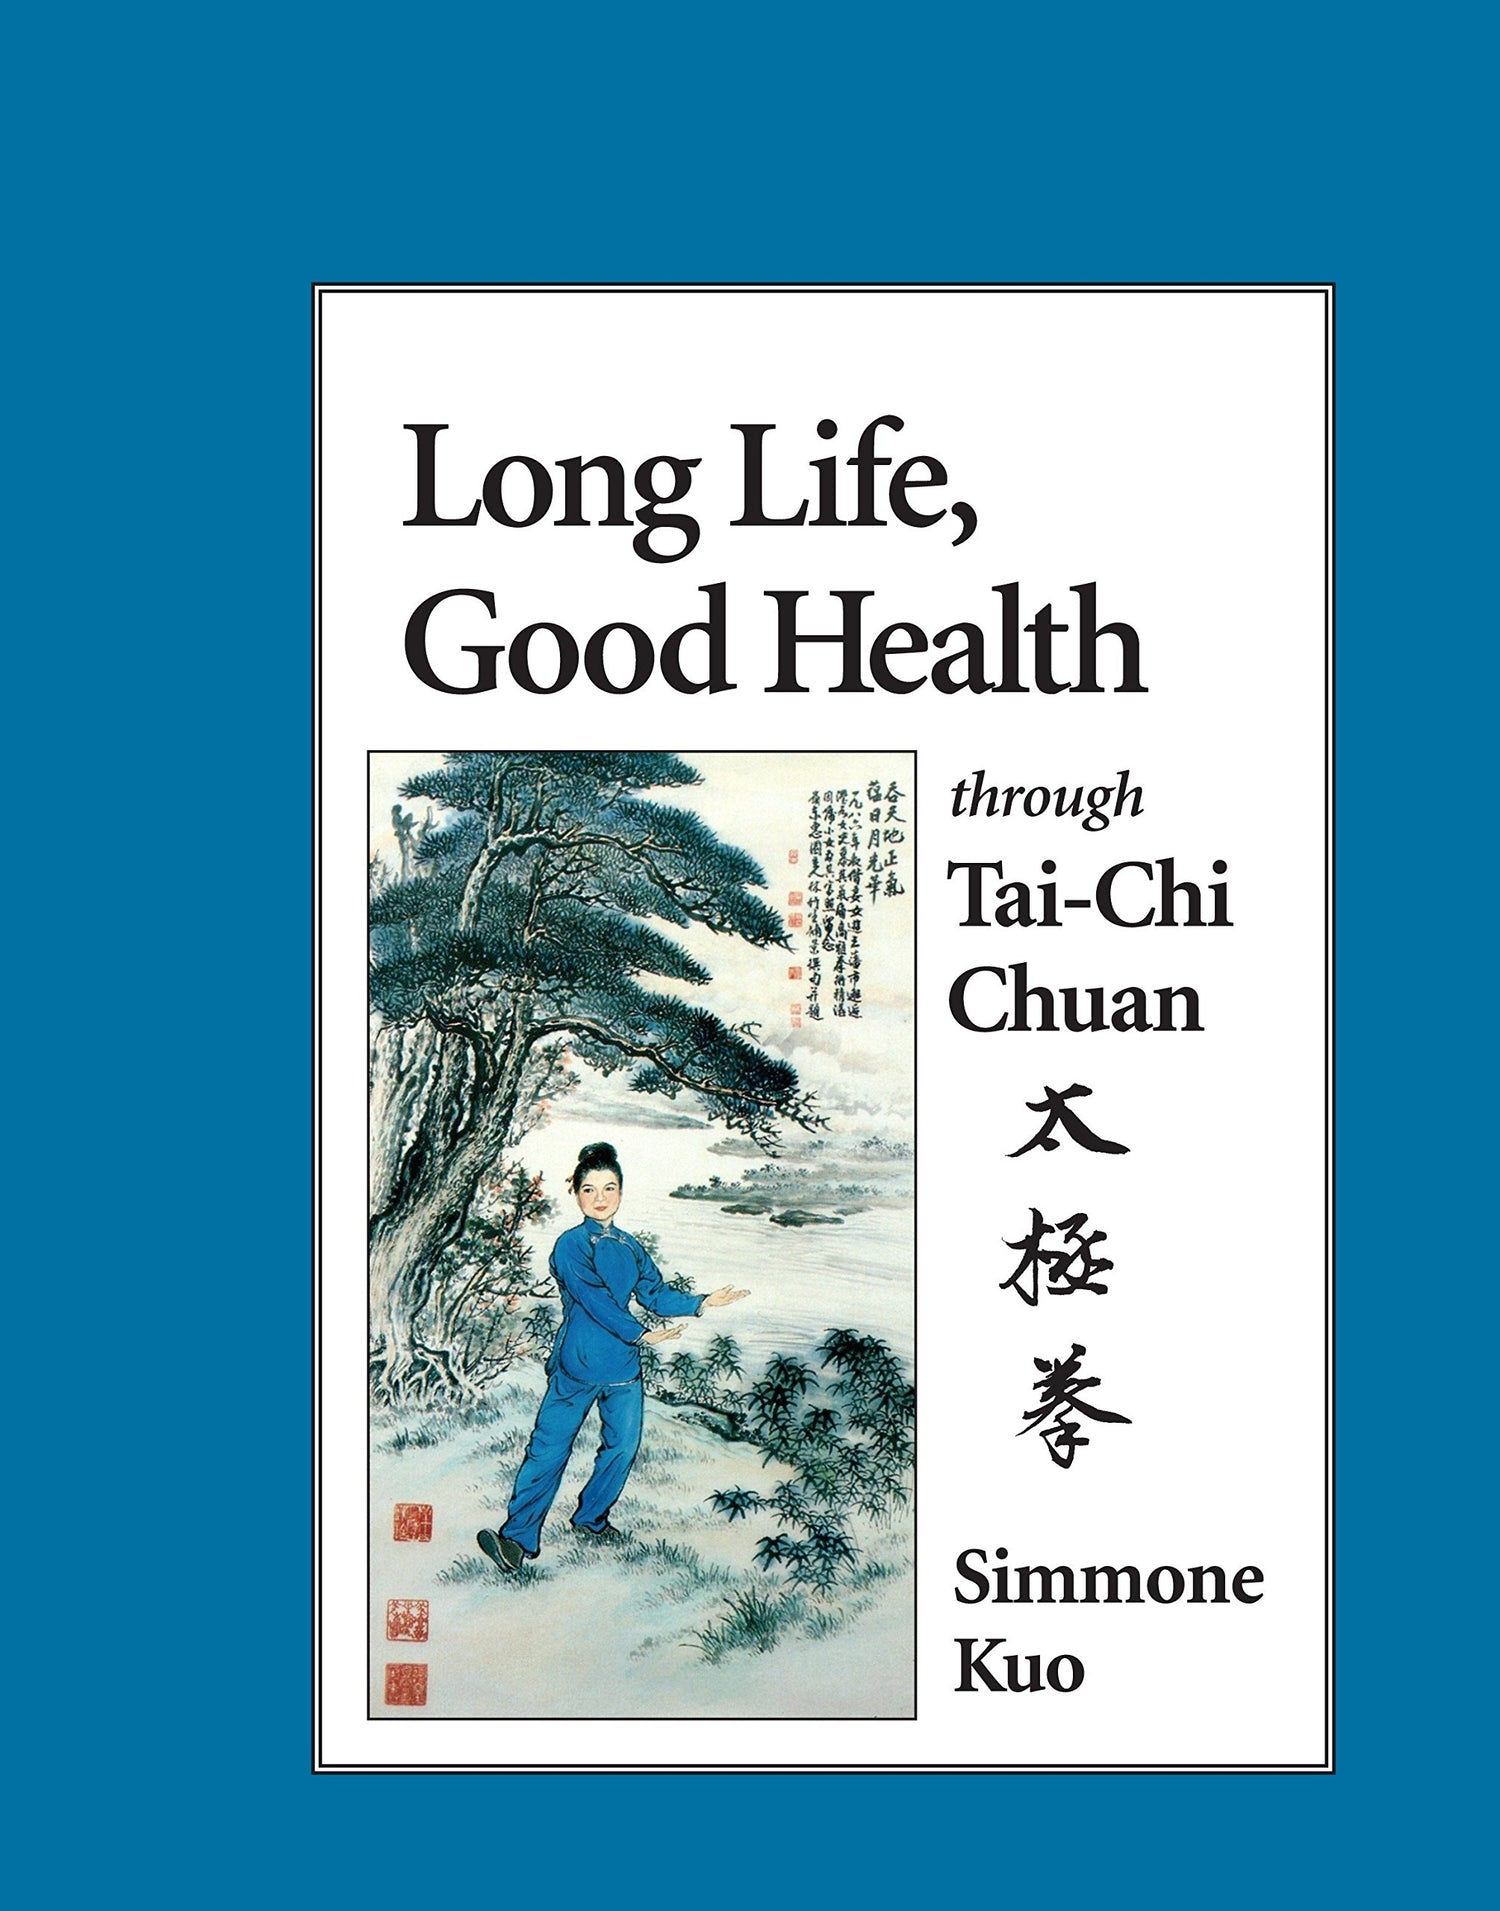 Libro larga vida y buena salud a través del Tai-Chi Chuan de Simmone Kuo (usado)